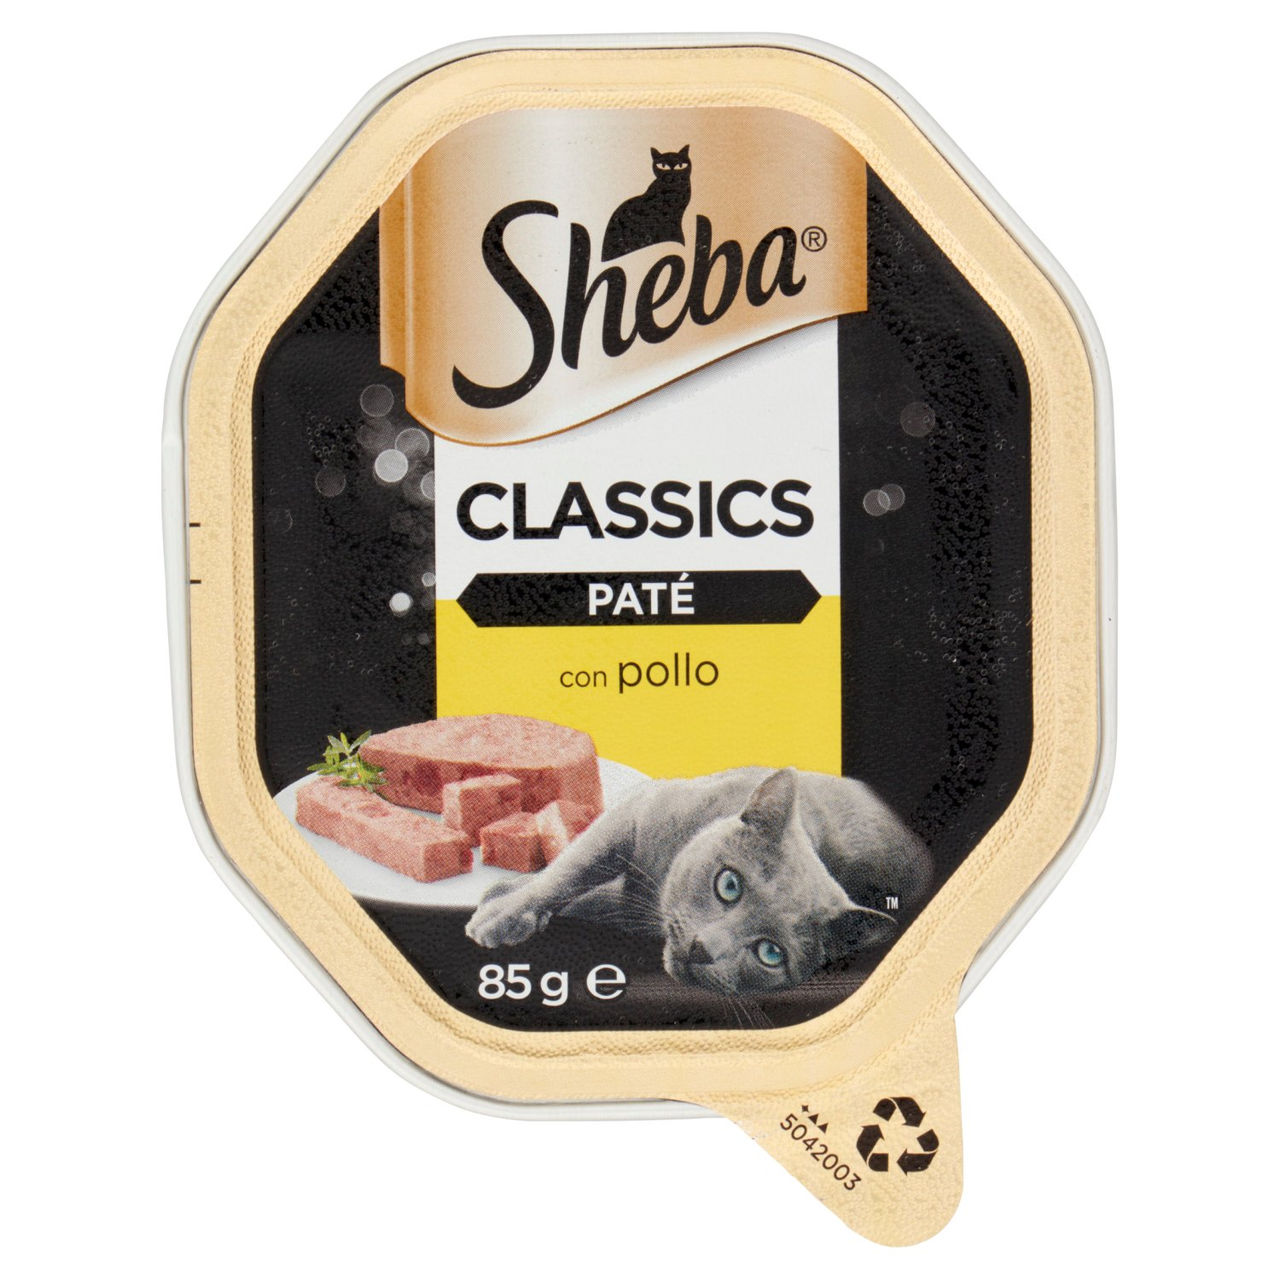 Sheba Paté Classics con Pollo 85 g